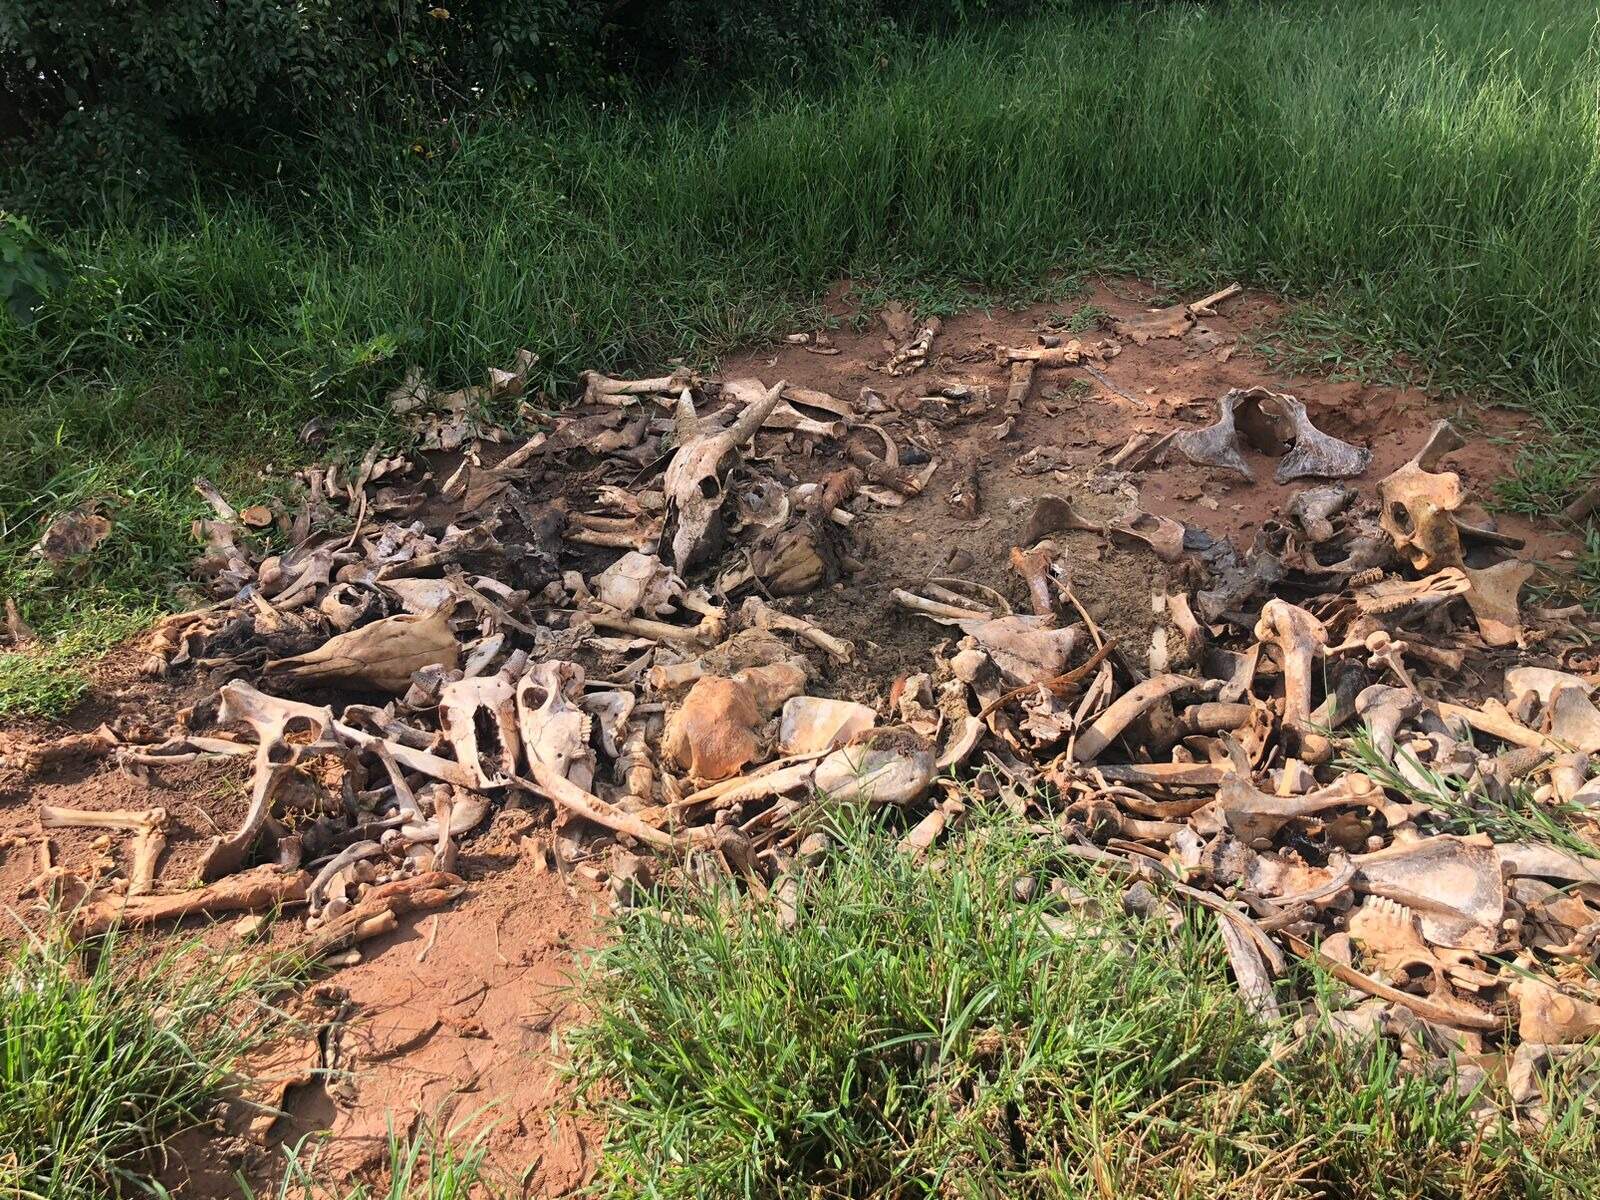 Cemitério de carcaça de bois leva à suspeita de abate clandestino